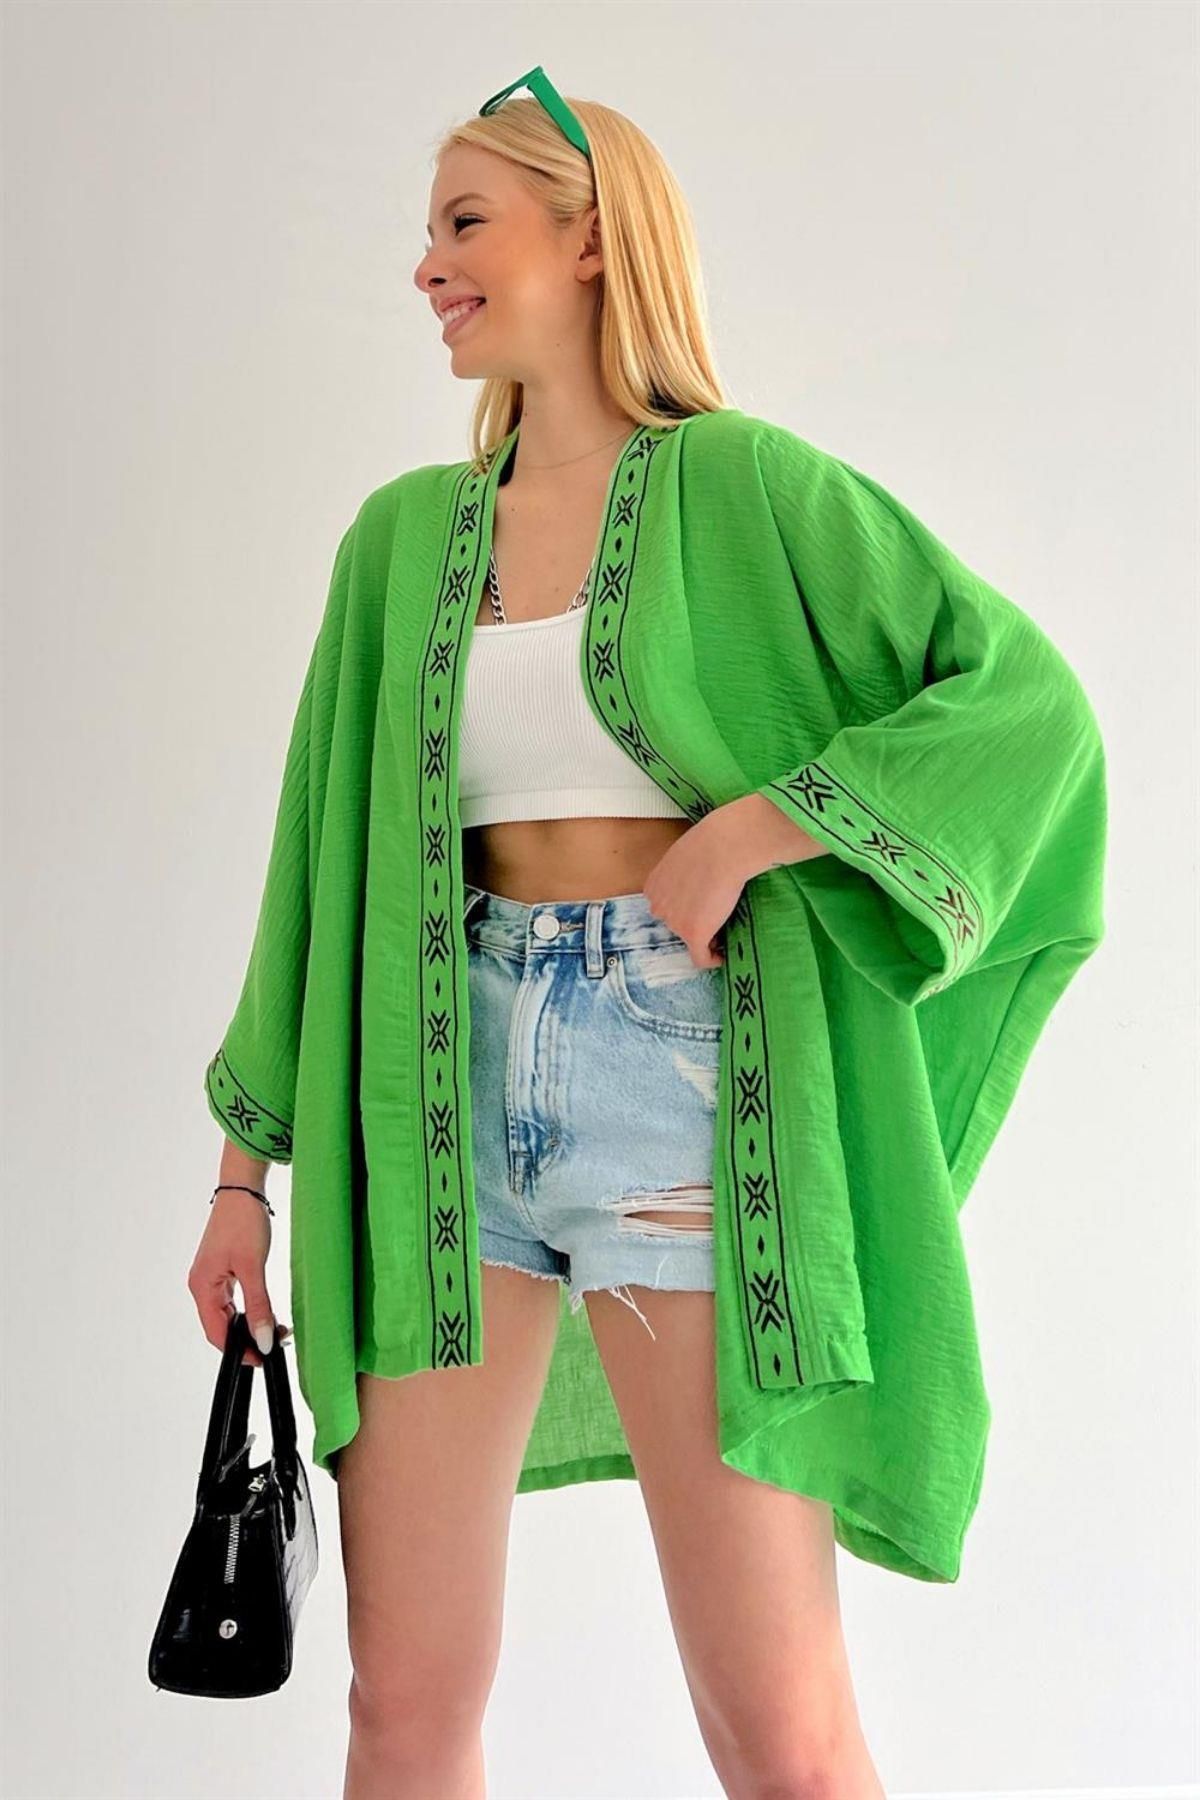 Mossta Merlin Ön Ve Kol Nakışlı Oversize Kimono Yeşil